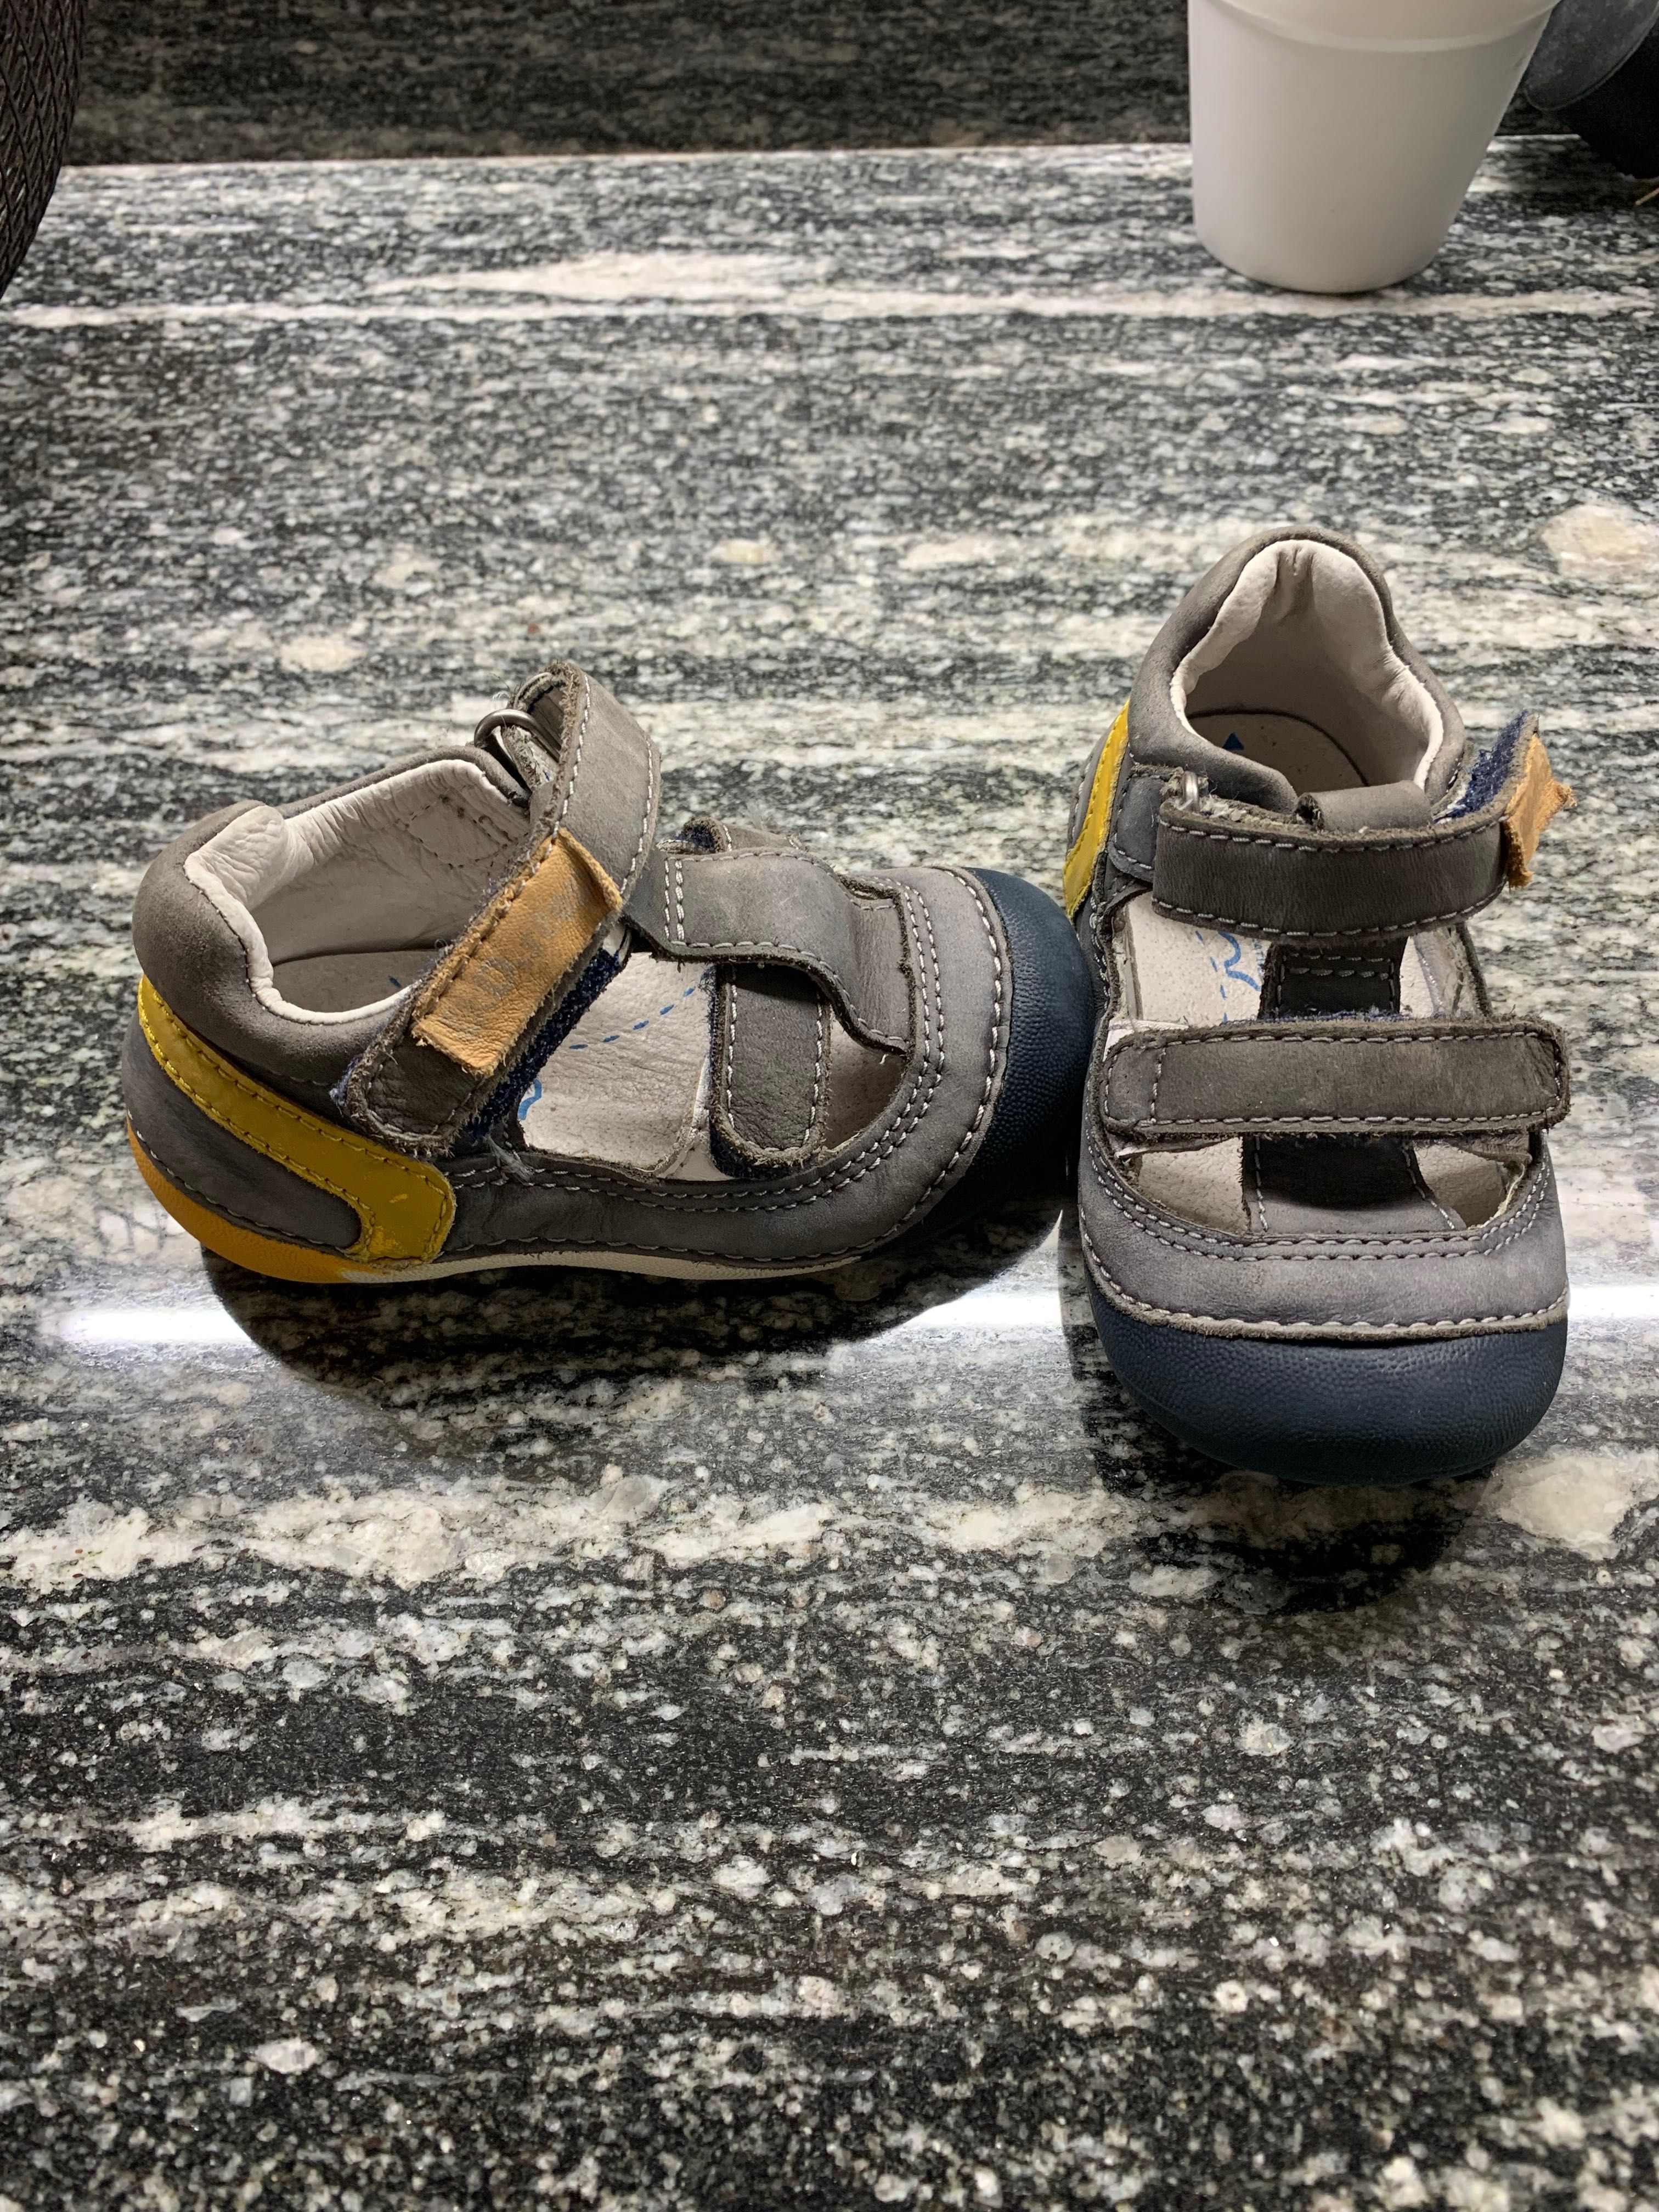 Бебешки обувки, сандали